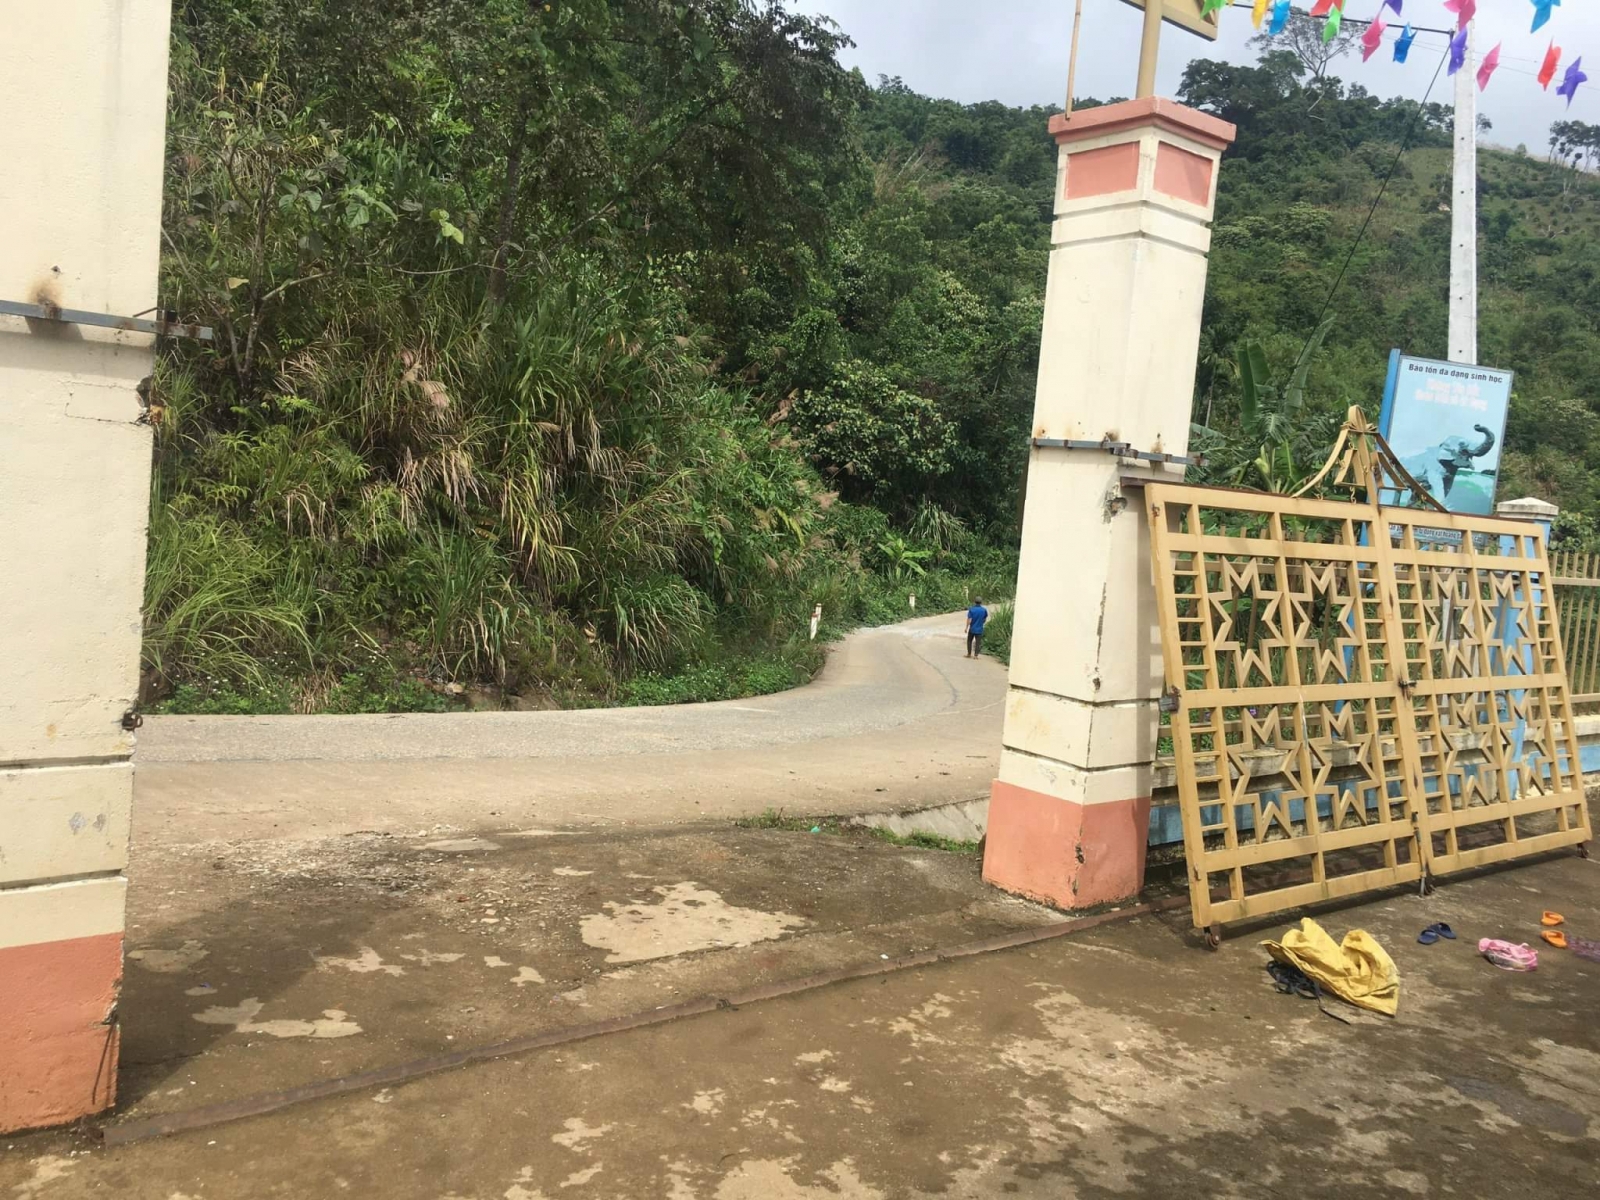 Sau vụ đổ cổng trường làm học sinh tử vong: Quảng Nam khẩn cấp rà soát an toàn trường học